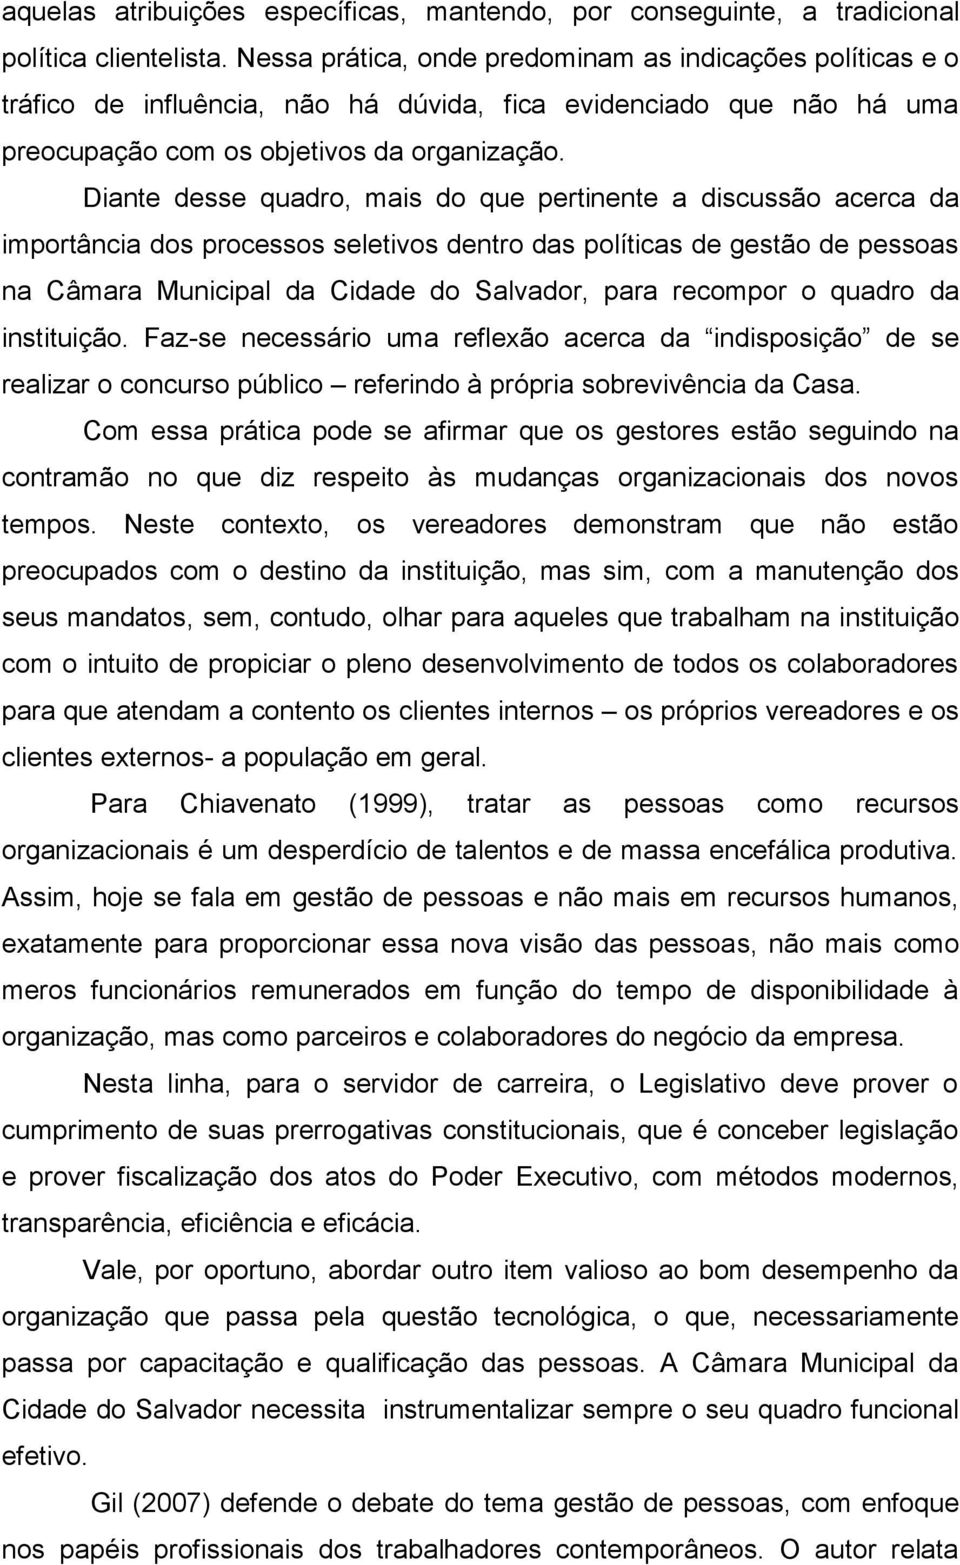 Diante desse quadro, mais do que pertinente a discussão acerca da importância dos processos seletivos dentro das políticas de gestão de pessoas na Câmara Municipal da Cidade do Salvador, para